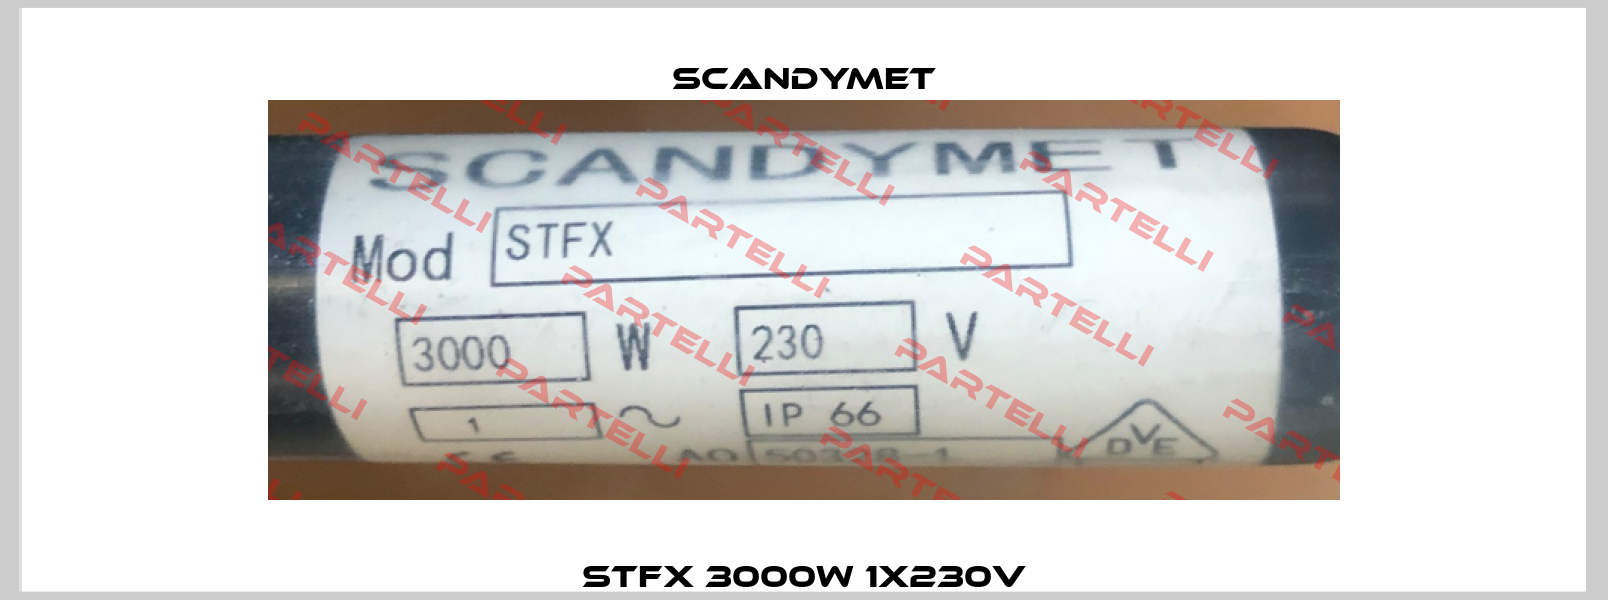 STFX 3000W 1x230V SCANDYMET